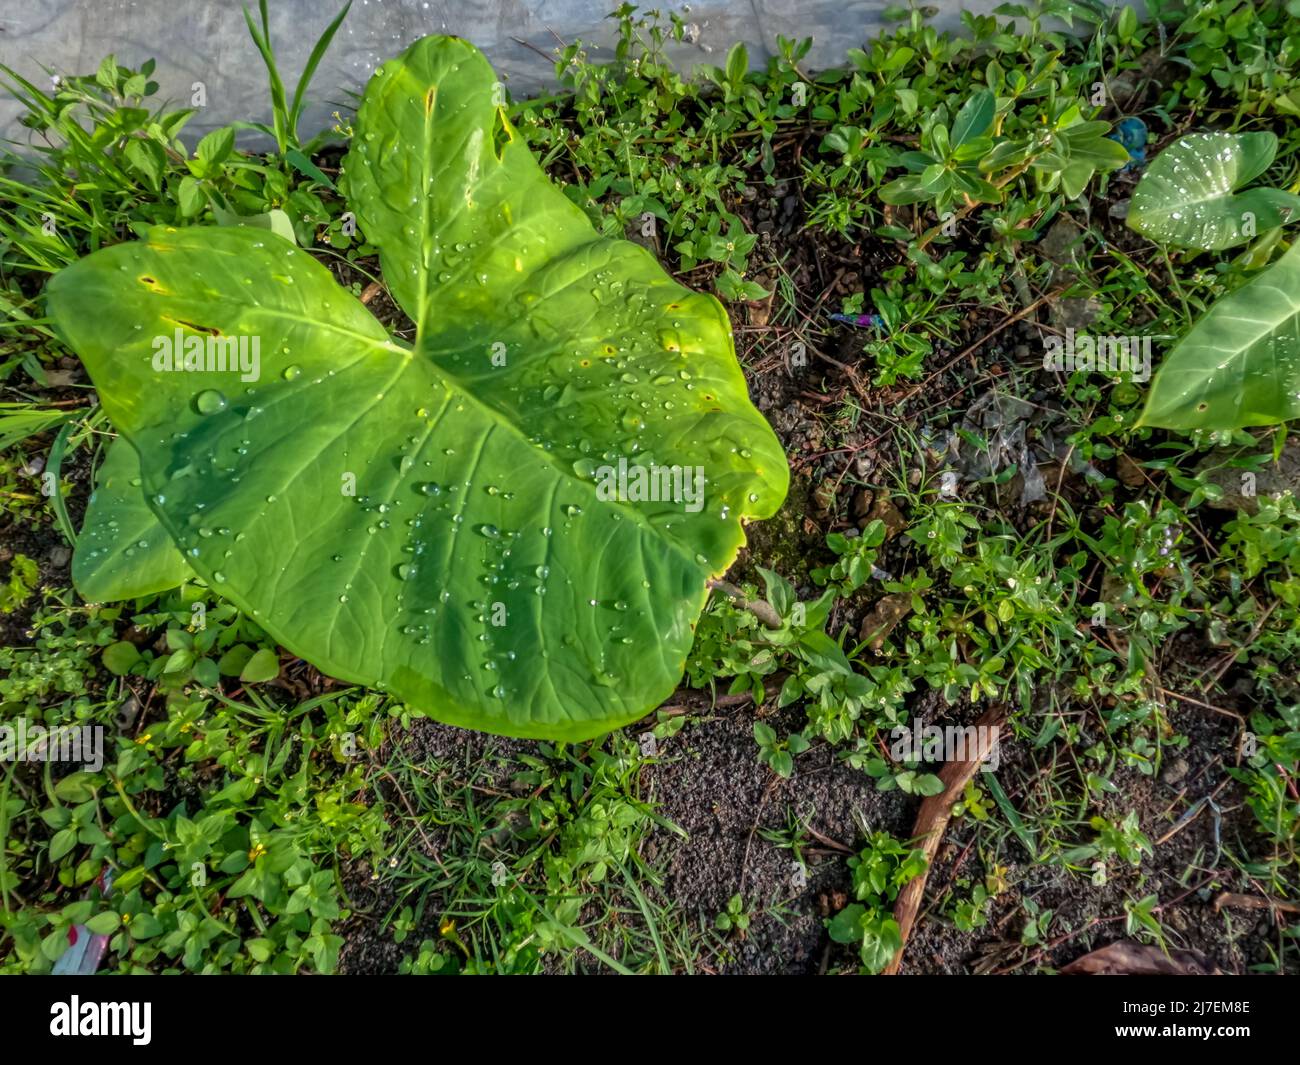 La pianta di Taro che cresce sul lato della strada ha ampie e sottili foglie verdi, belle condizioni naturali rurali Foto Stock